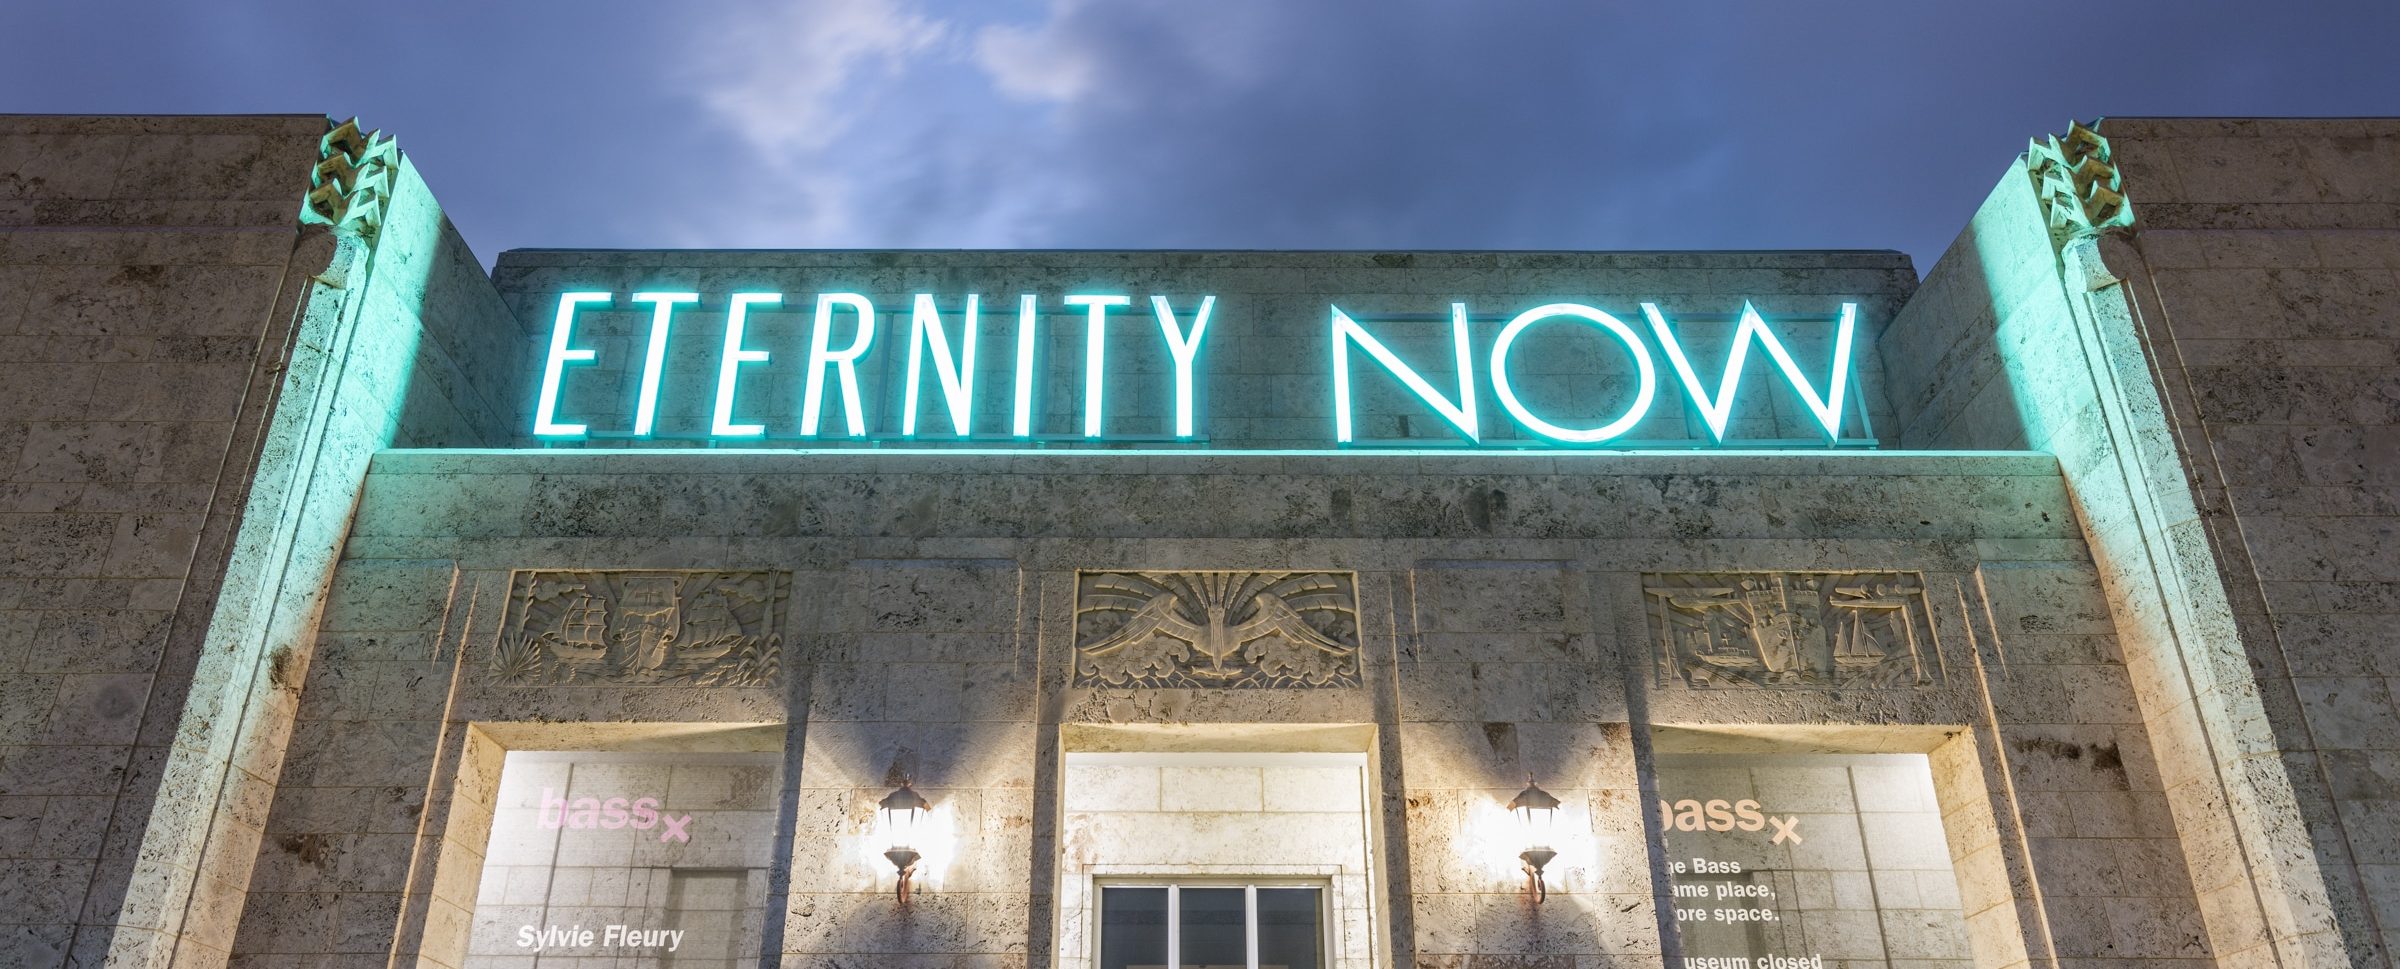 Eternity Now, 2015